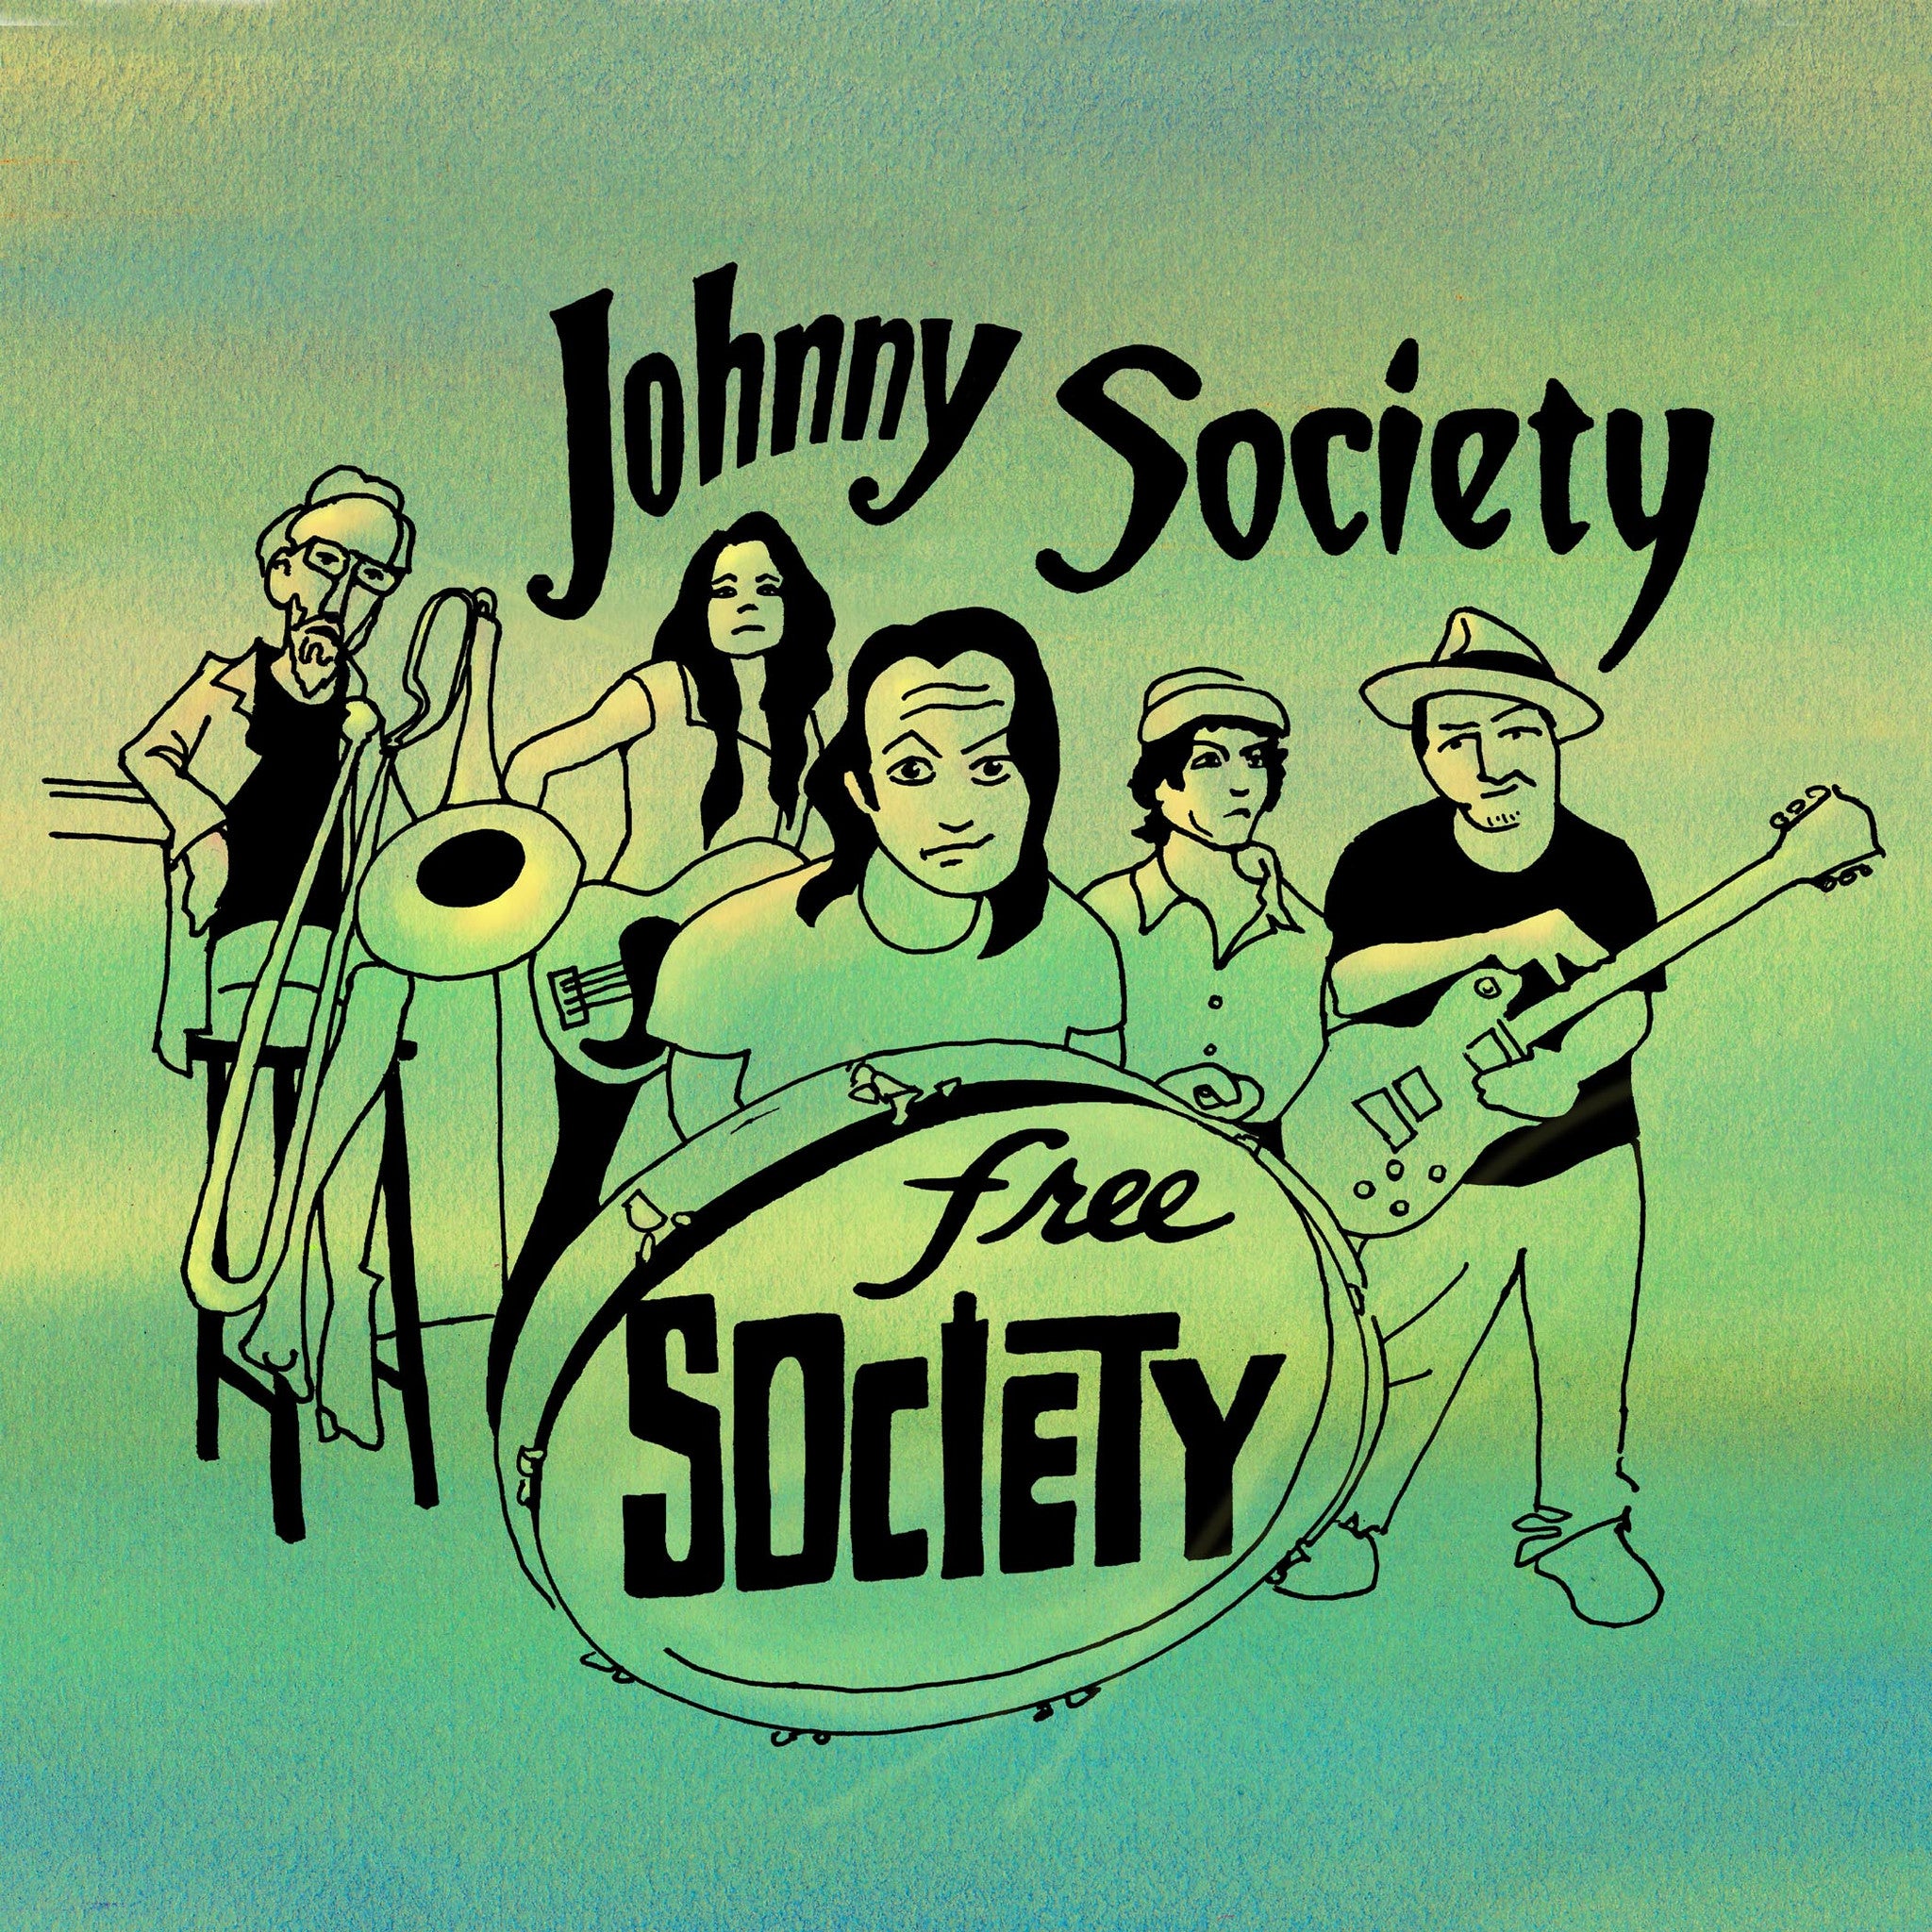 Johnny Society - Free Society